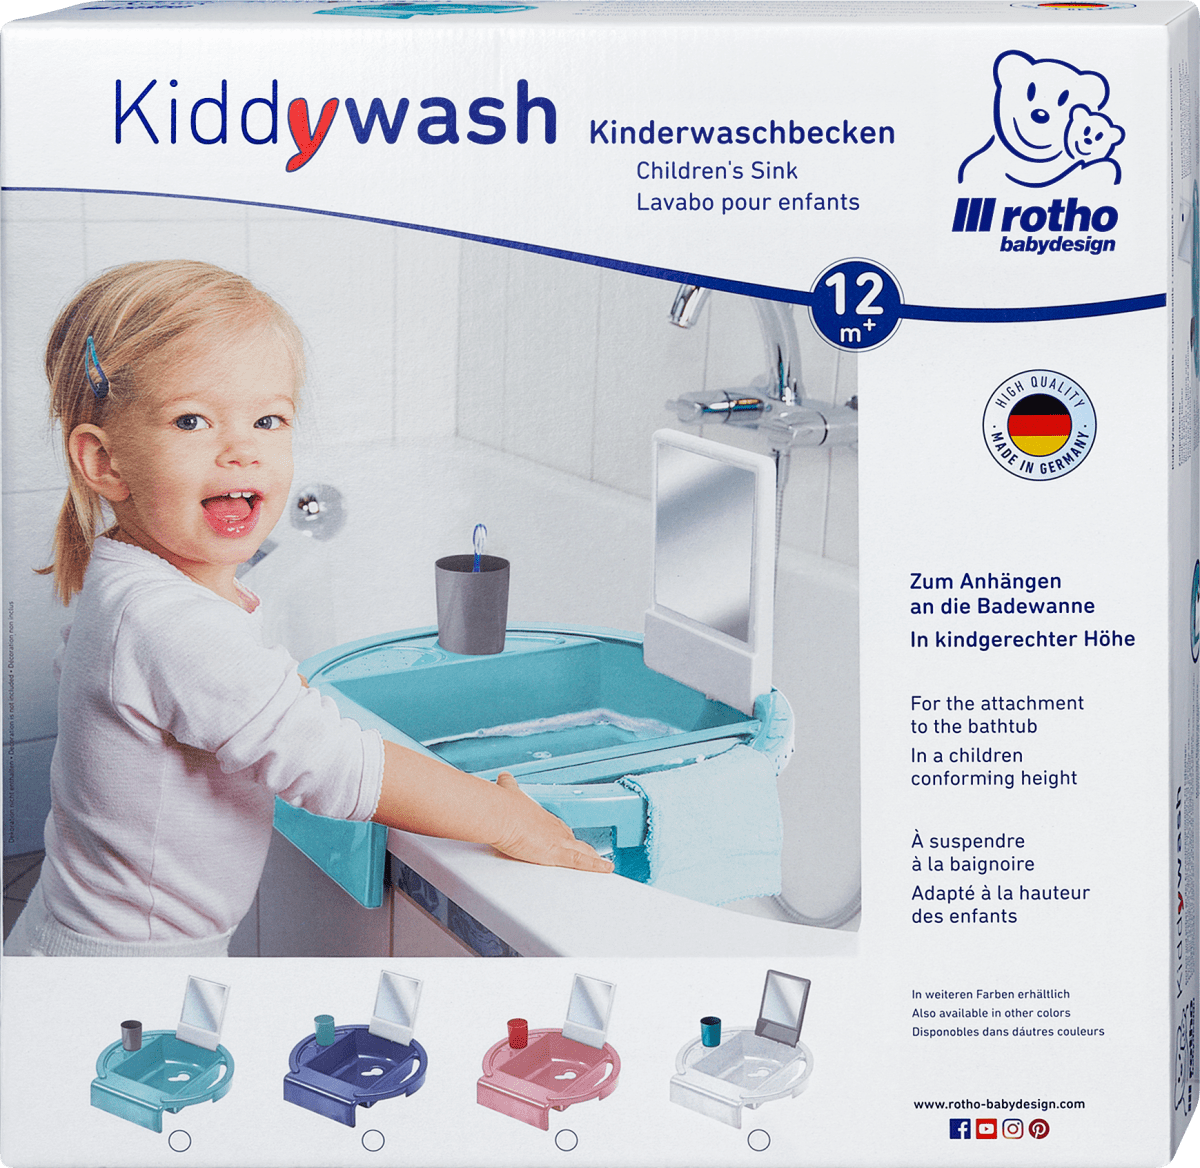 Kinderwaschbecken KIDDY WASH Kinder Waschbecken Waschschale Waschschüssel Becken 